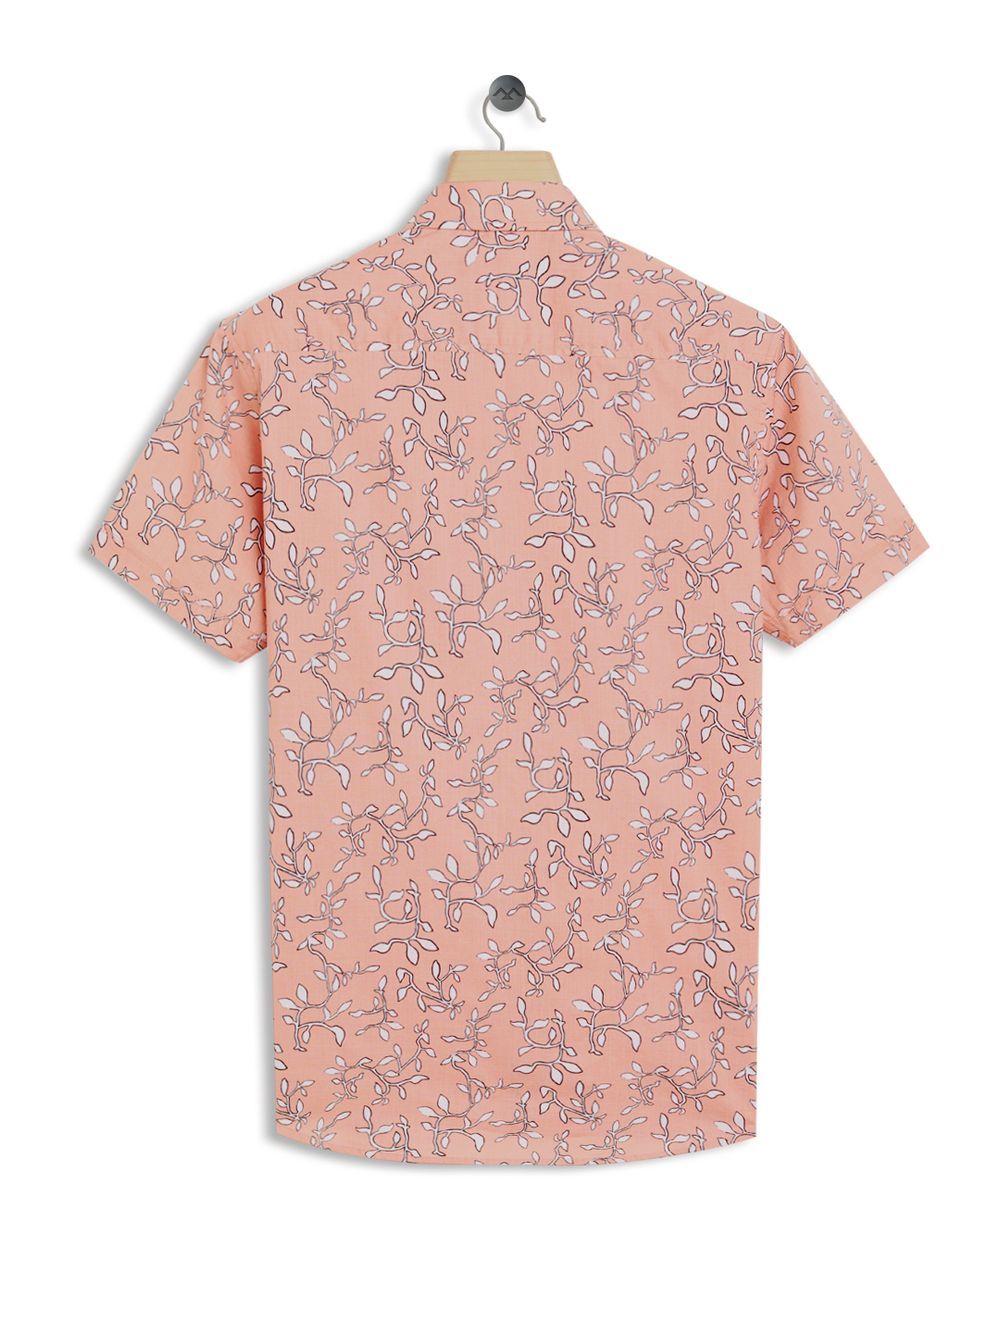 Peach & White Trellis Print Shirt